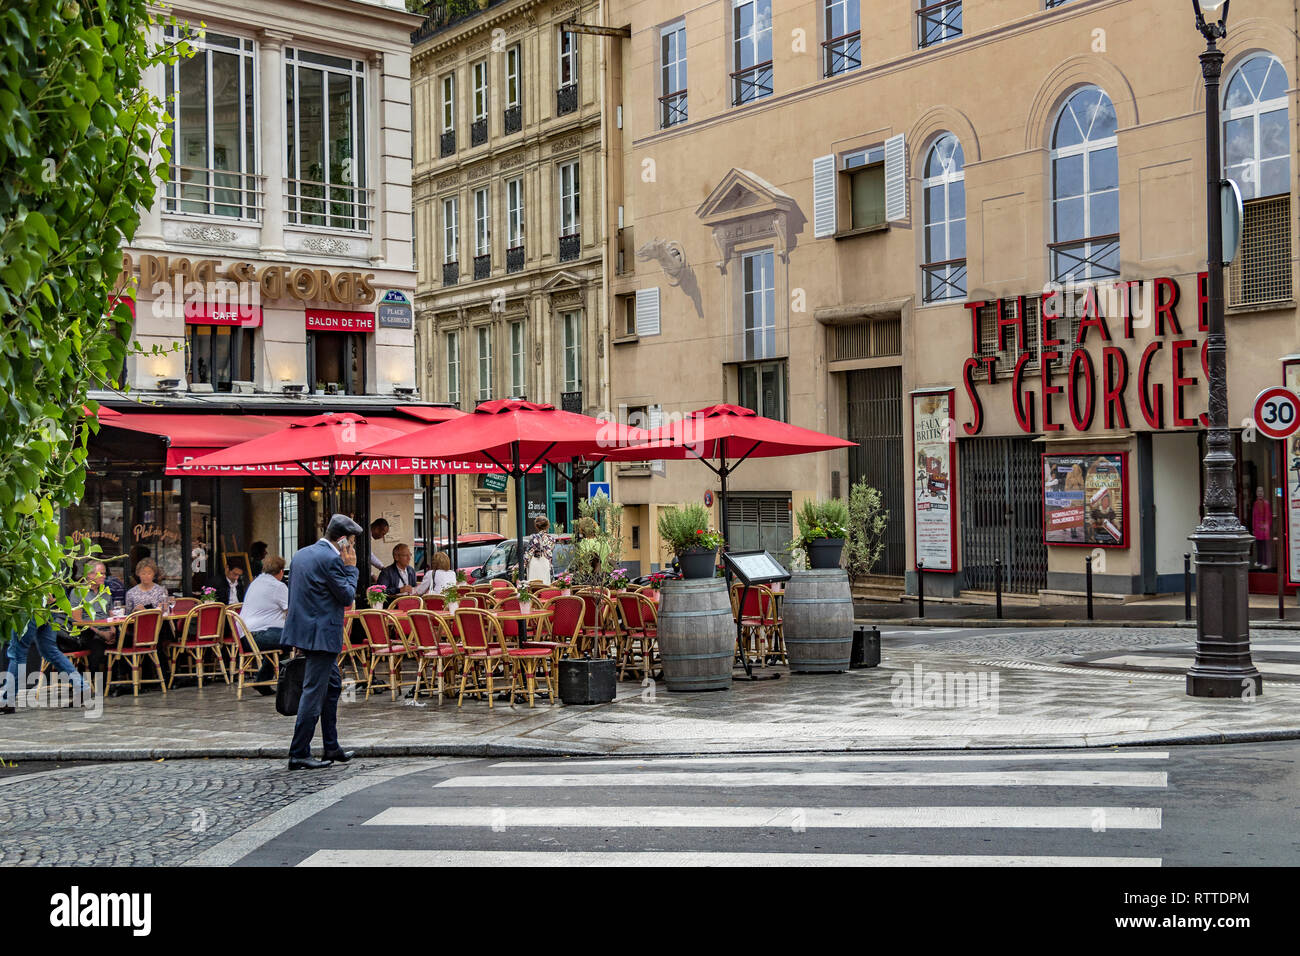 Personnes assises à des tables à l'extérieur DE la place Saint-Georges, un café-restaurant à St Georges, dans le 9ème arrondissement de Paris, France Banque D'Images